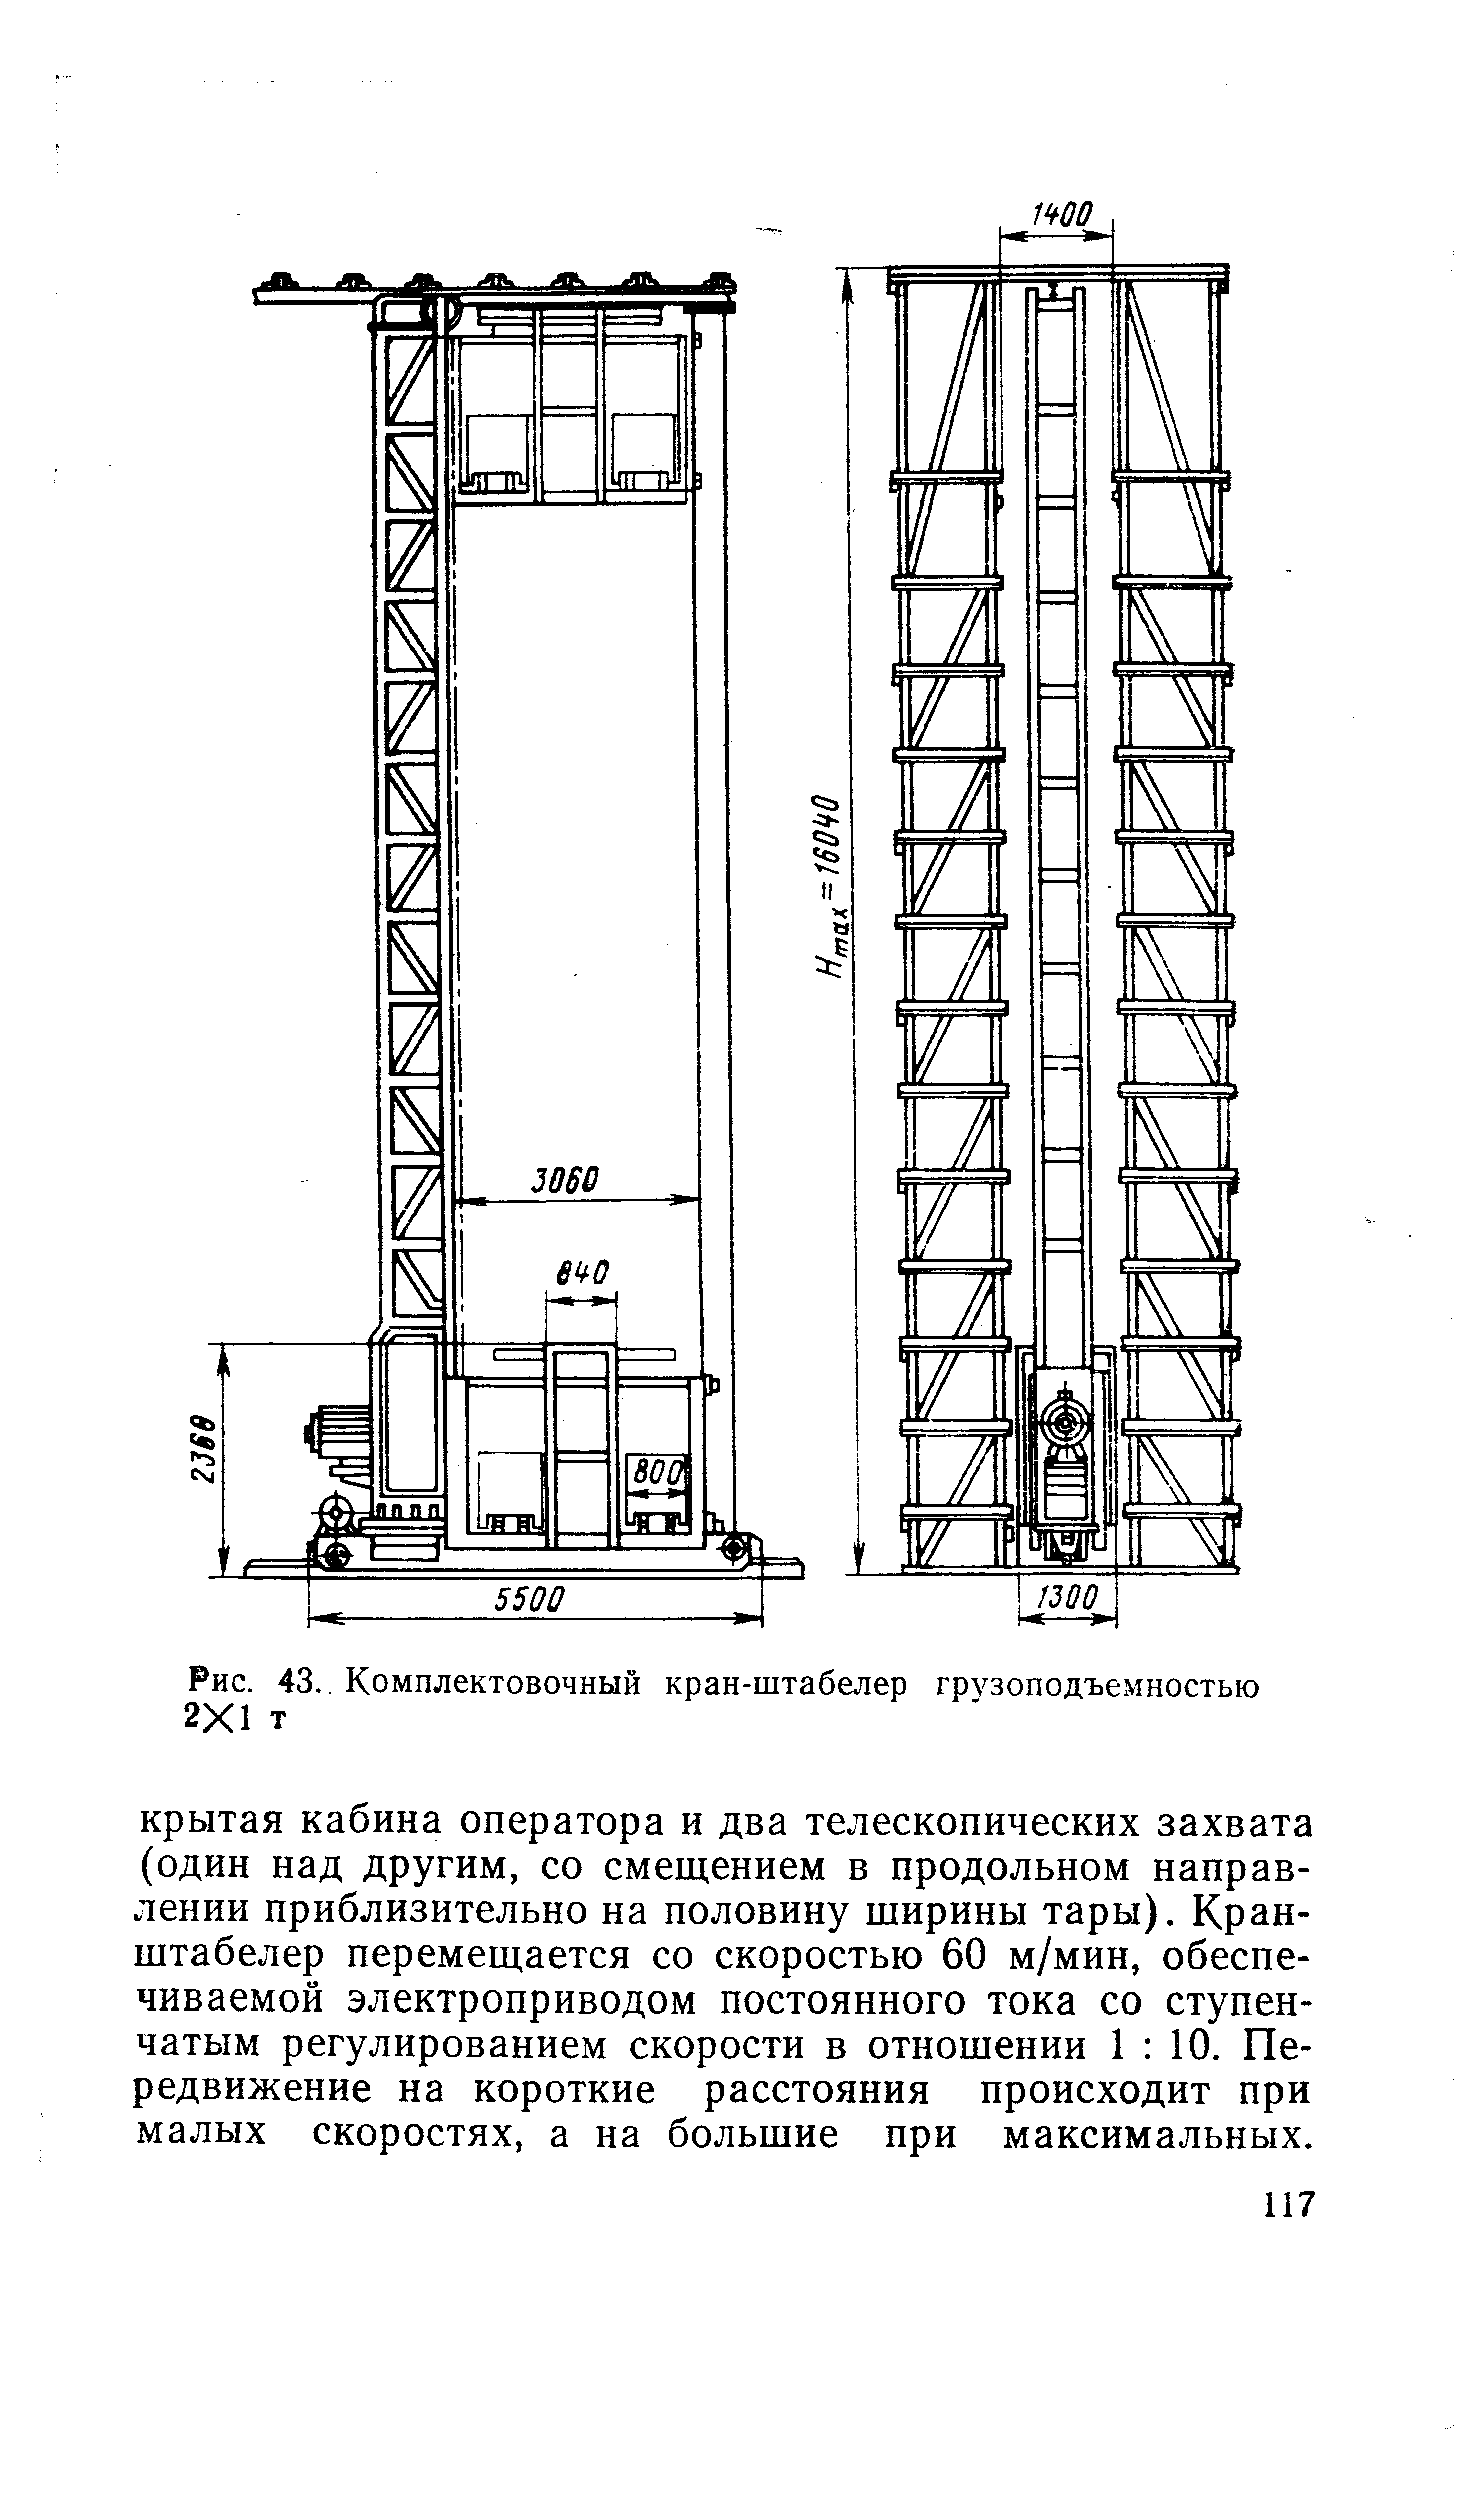 Рис. 43,. Комплектовочный кран-штабелер грз зоподъемностью 2Х1 т
